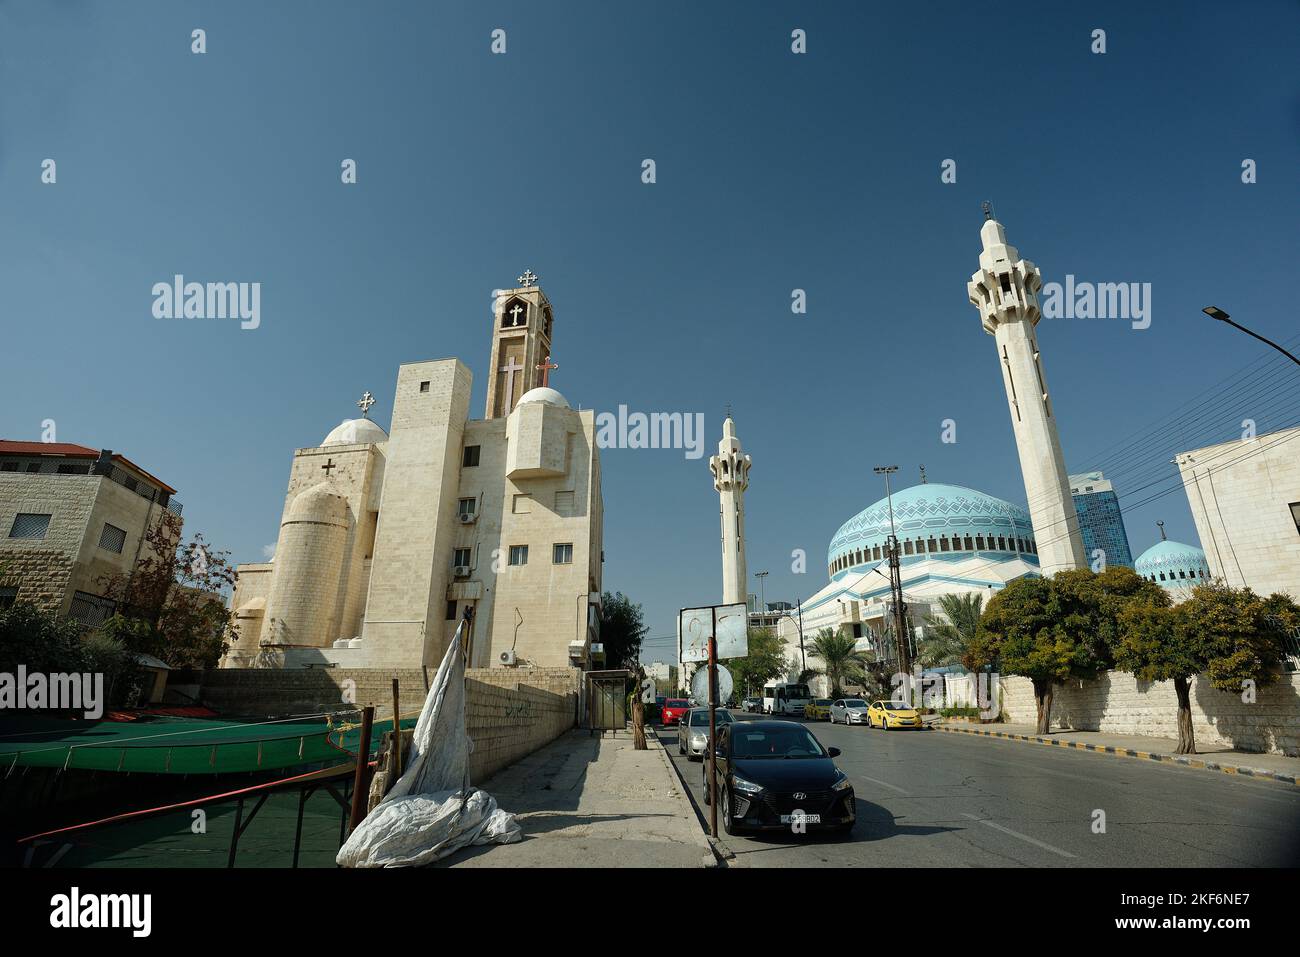 Una iglesia cristiana y una mezquita islámica moderna una al lado de la otra en Ammán, Jordania. Tanto la iglesia contemporánea como la arquitectura islámica. Foto de stock